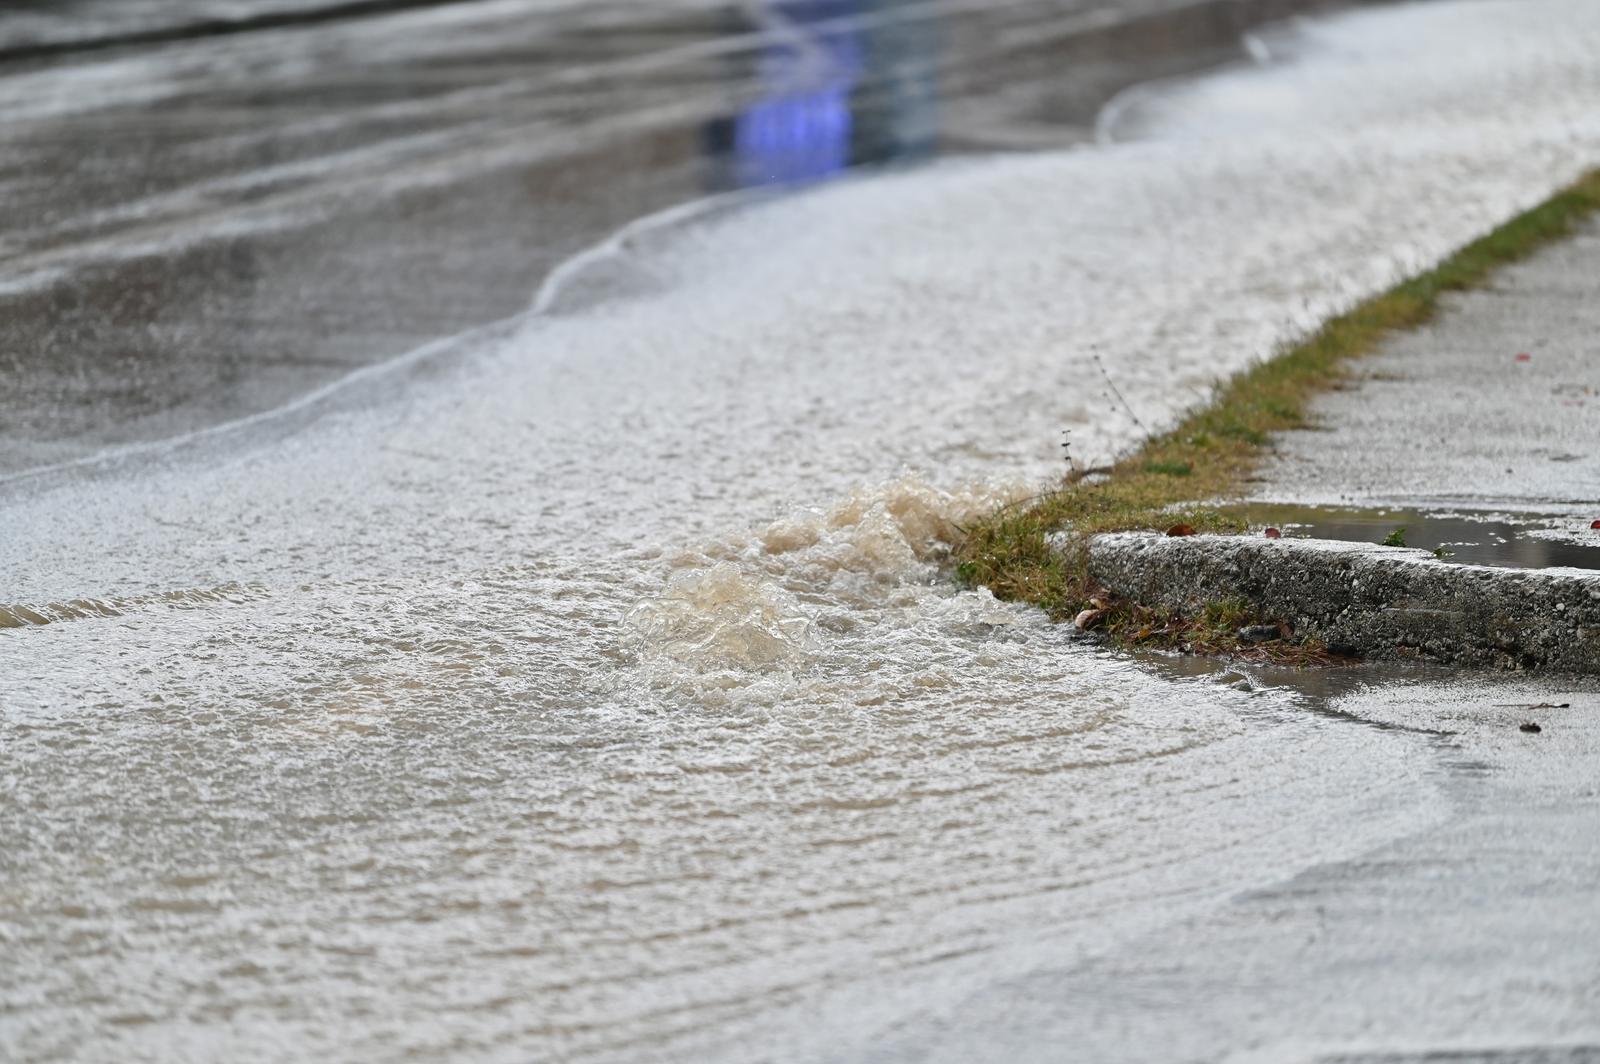 08.12.2022., Makarska - Zbog obilne kise potopljene su ceste u Makarskoj sto otezava promet Photo: Matko Begovic/PIXSELL